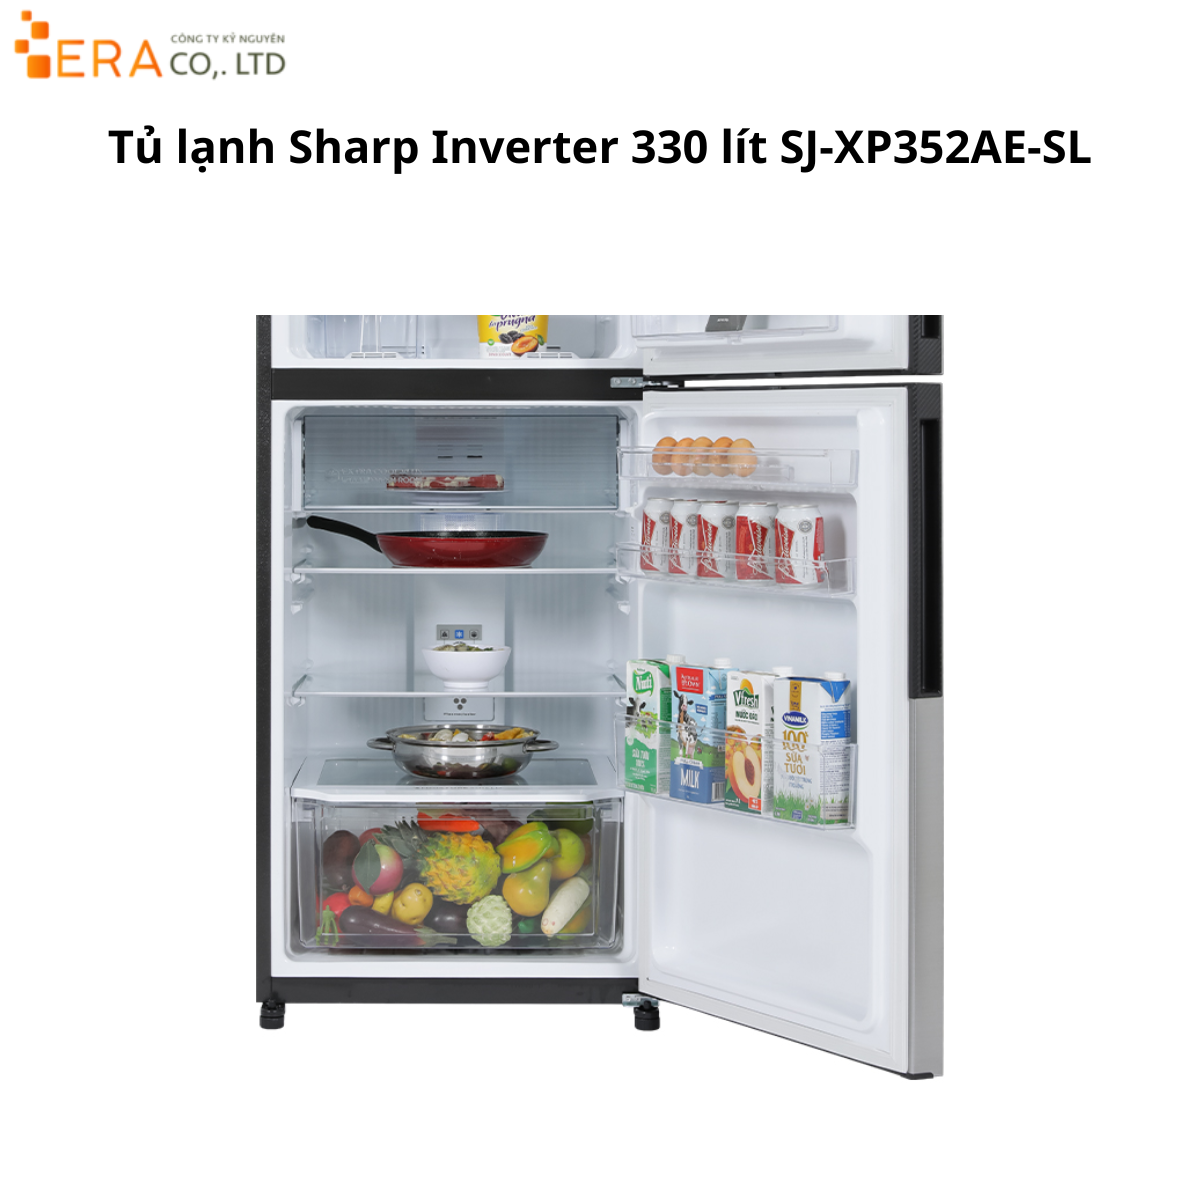  Tủ lạnh Sharp Inverter 330 lít SJ-XP352AE-SL 